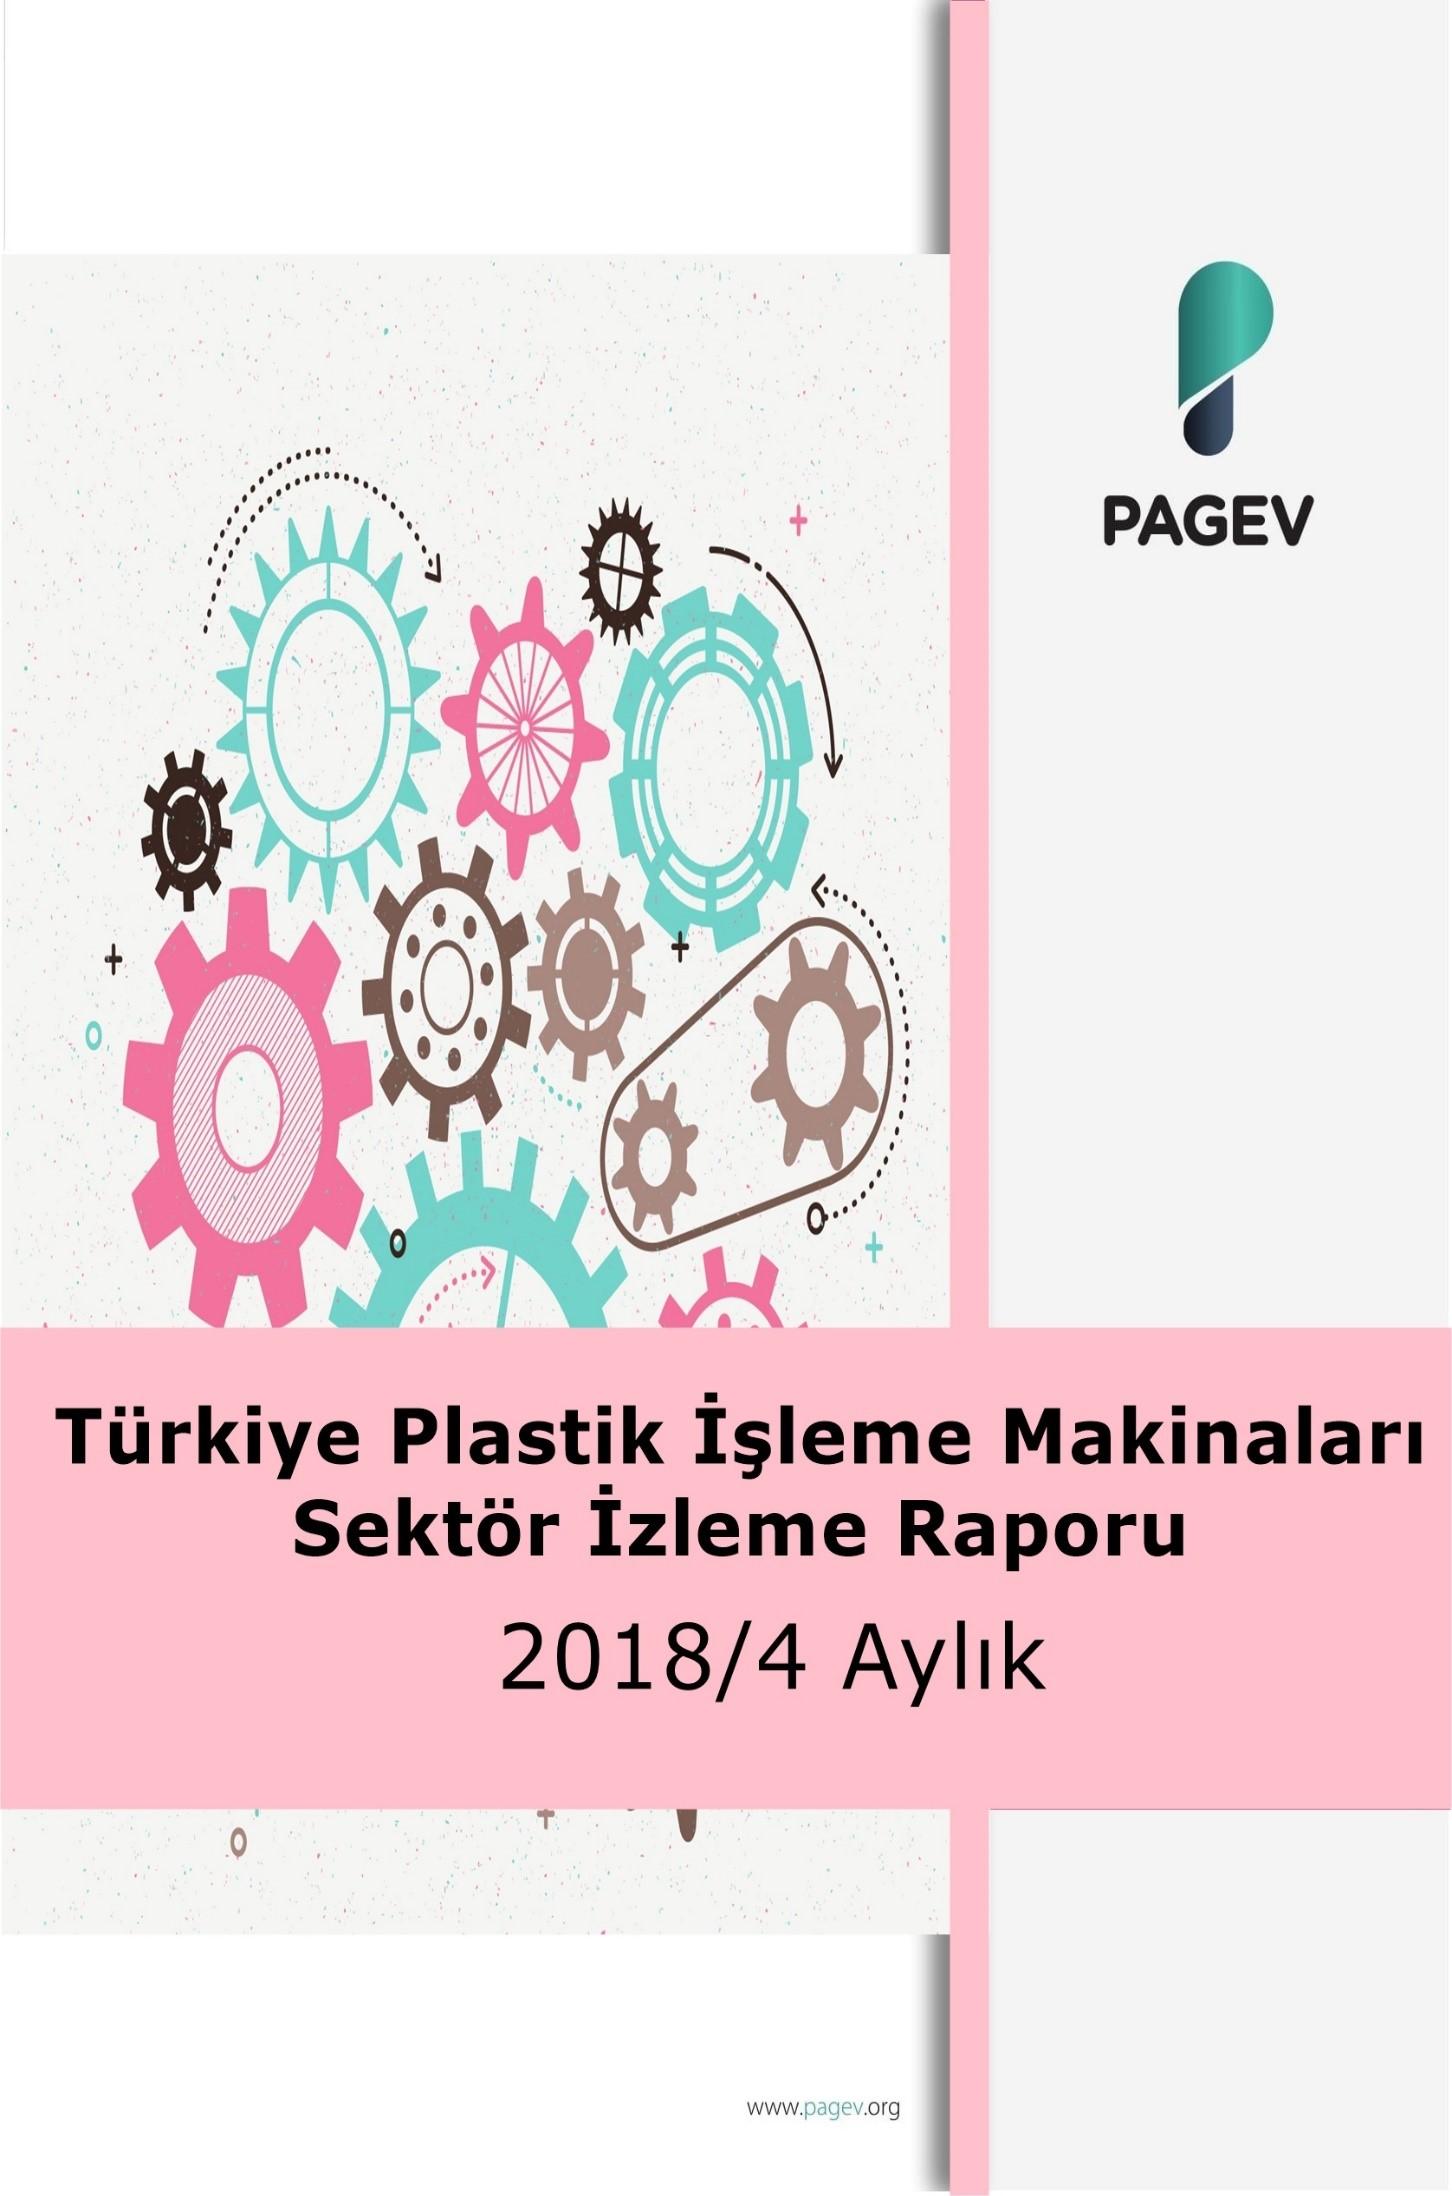 Türkiye Plastik İşleme Makineleri Sektör İzleme Raporu 2018/4 Aylık